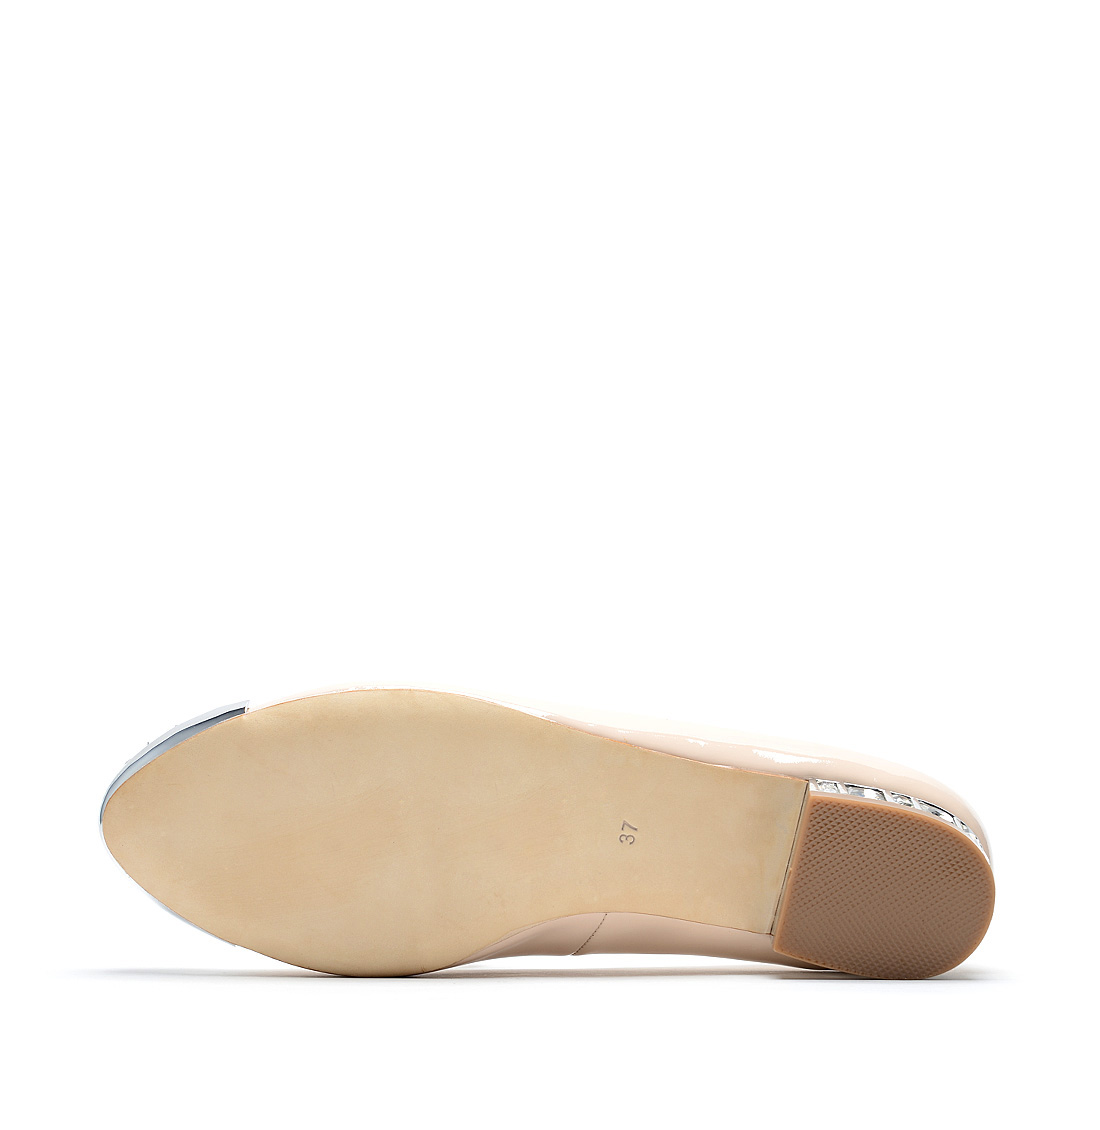 [RedLoafer]名族风水钻牛漆皮革单鞋(尺码标准)
编号:A3639D1A76